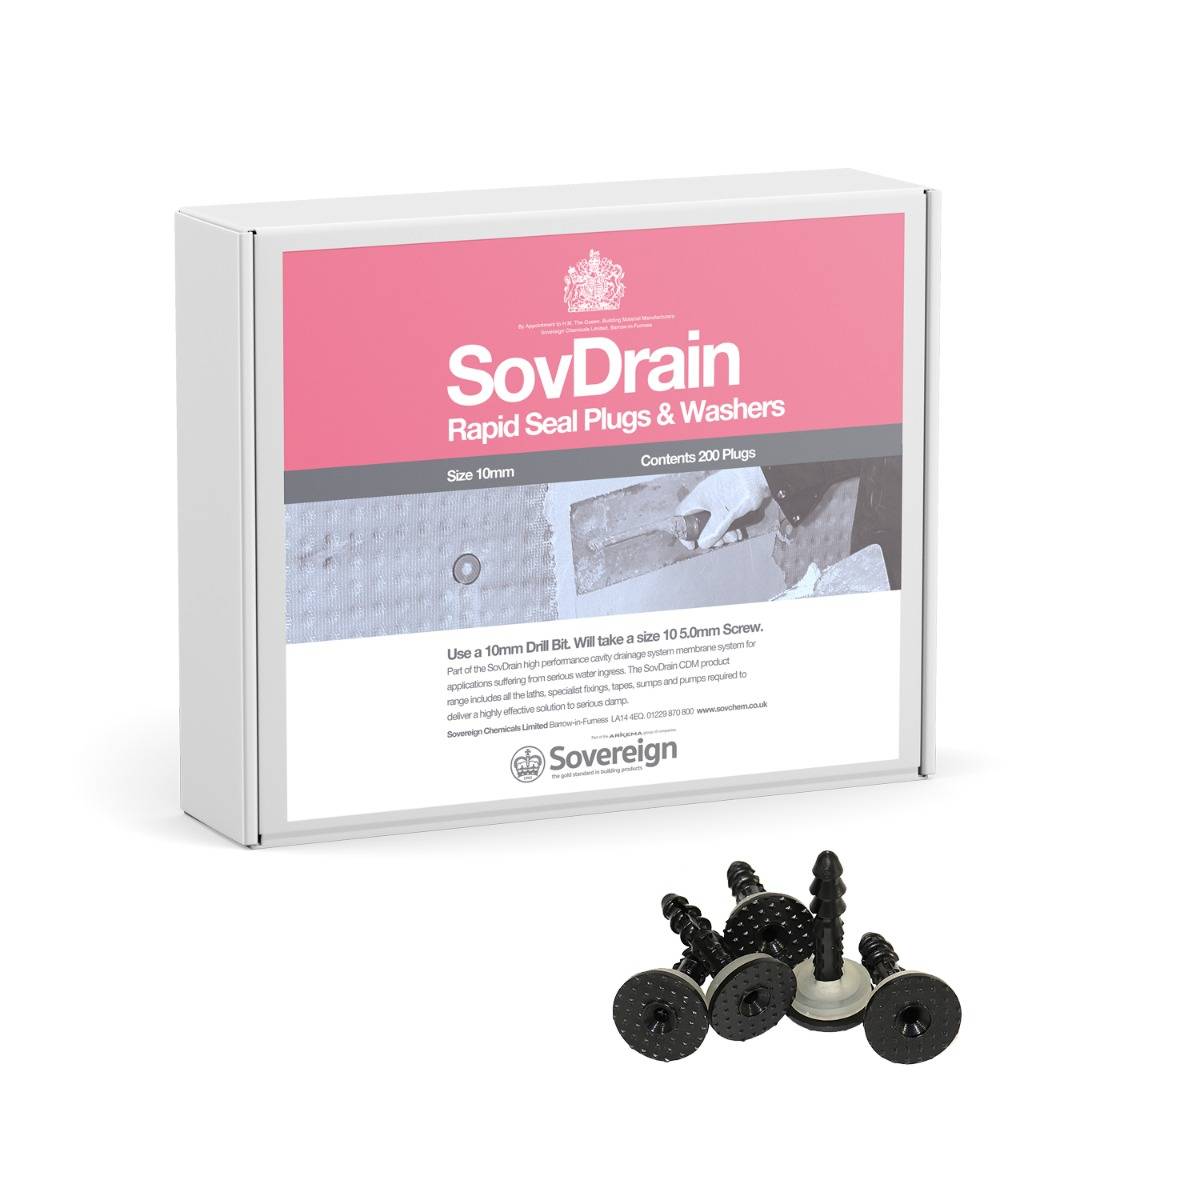 SovDrain Rapid Seal Plugs